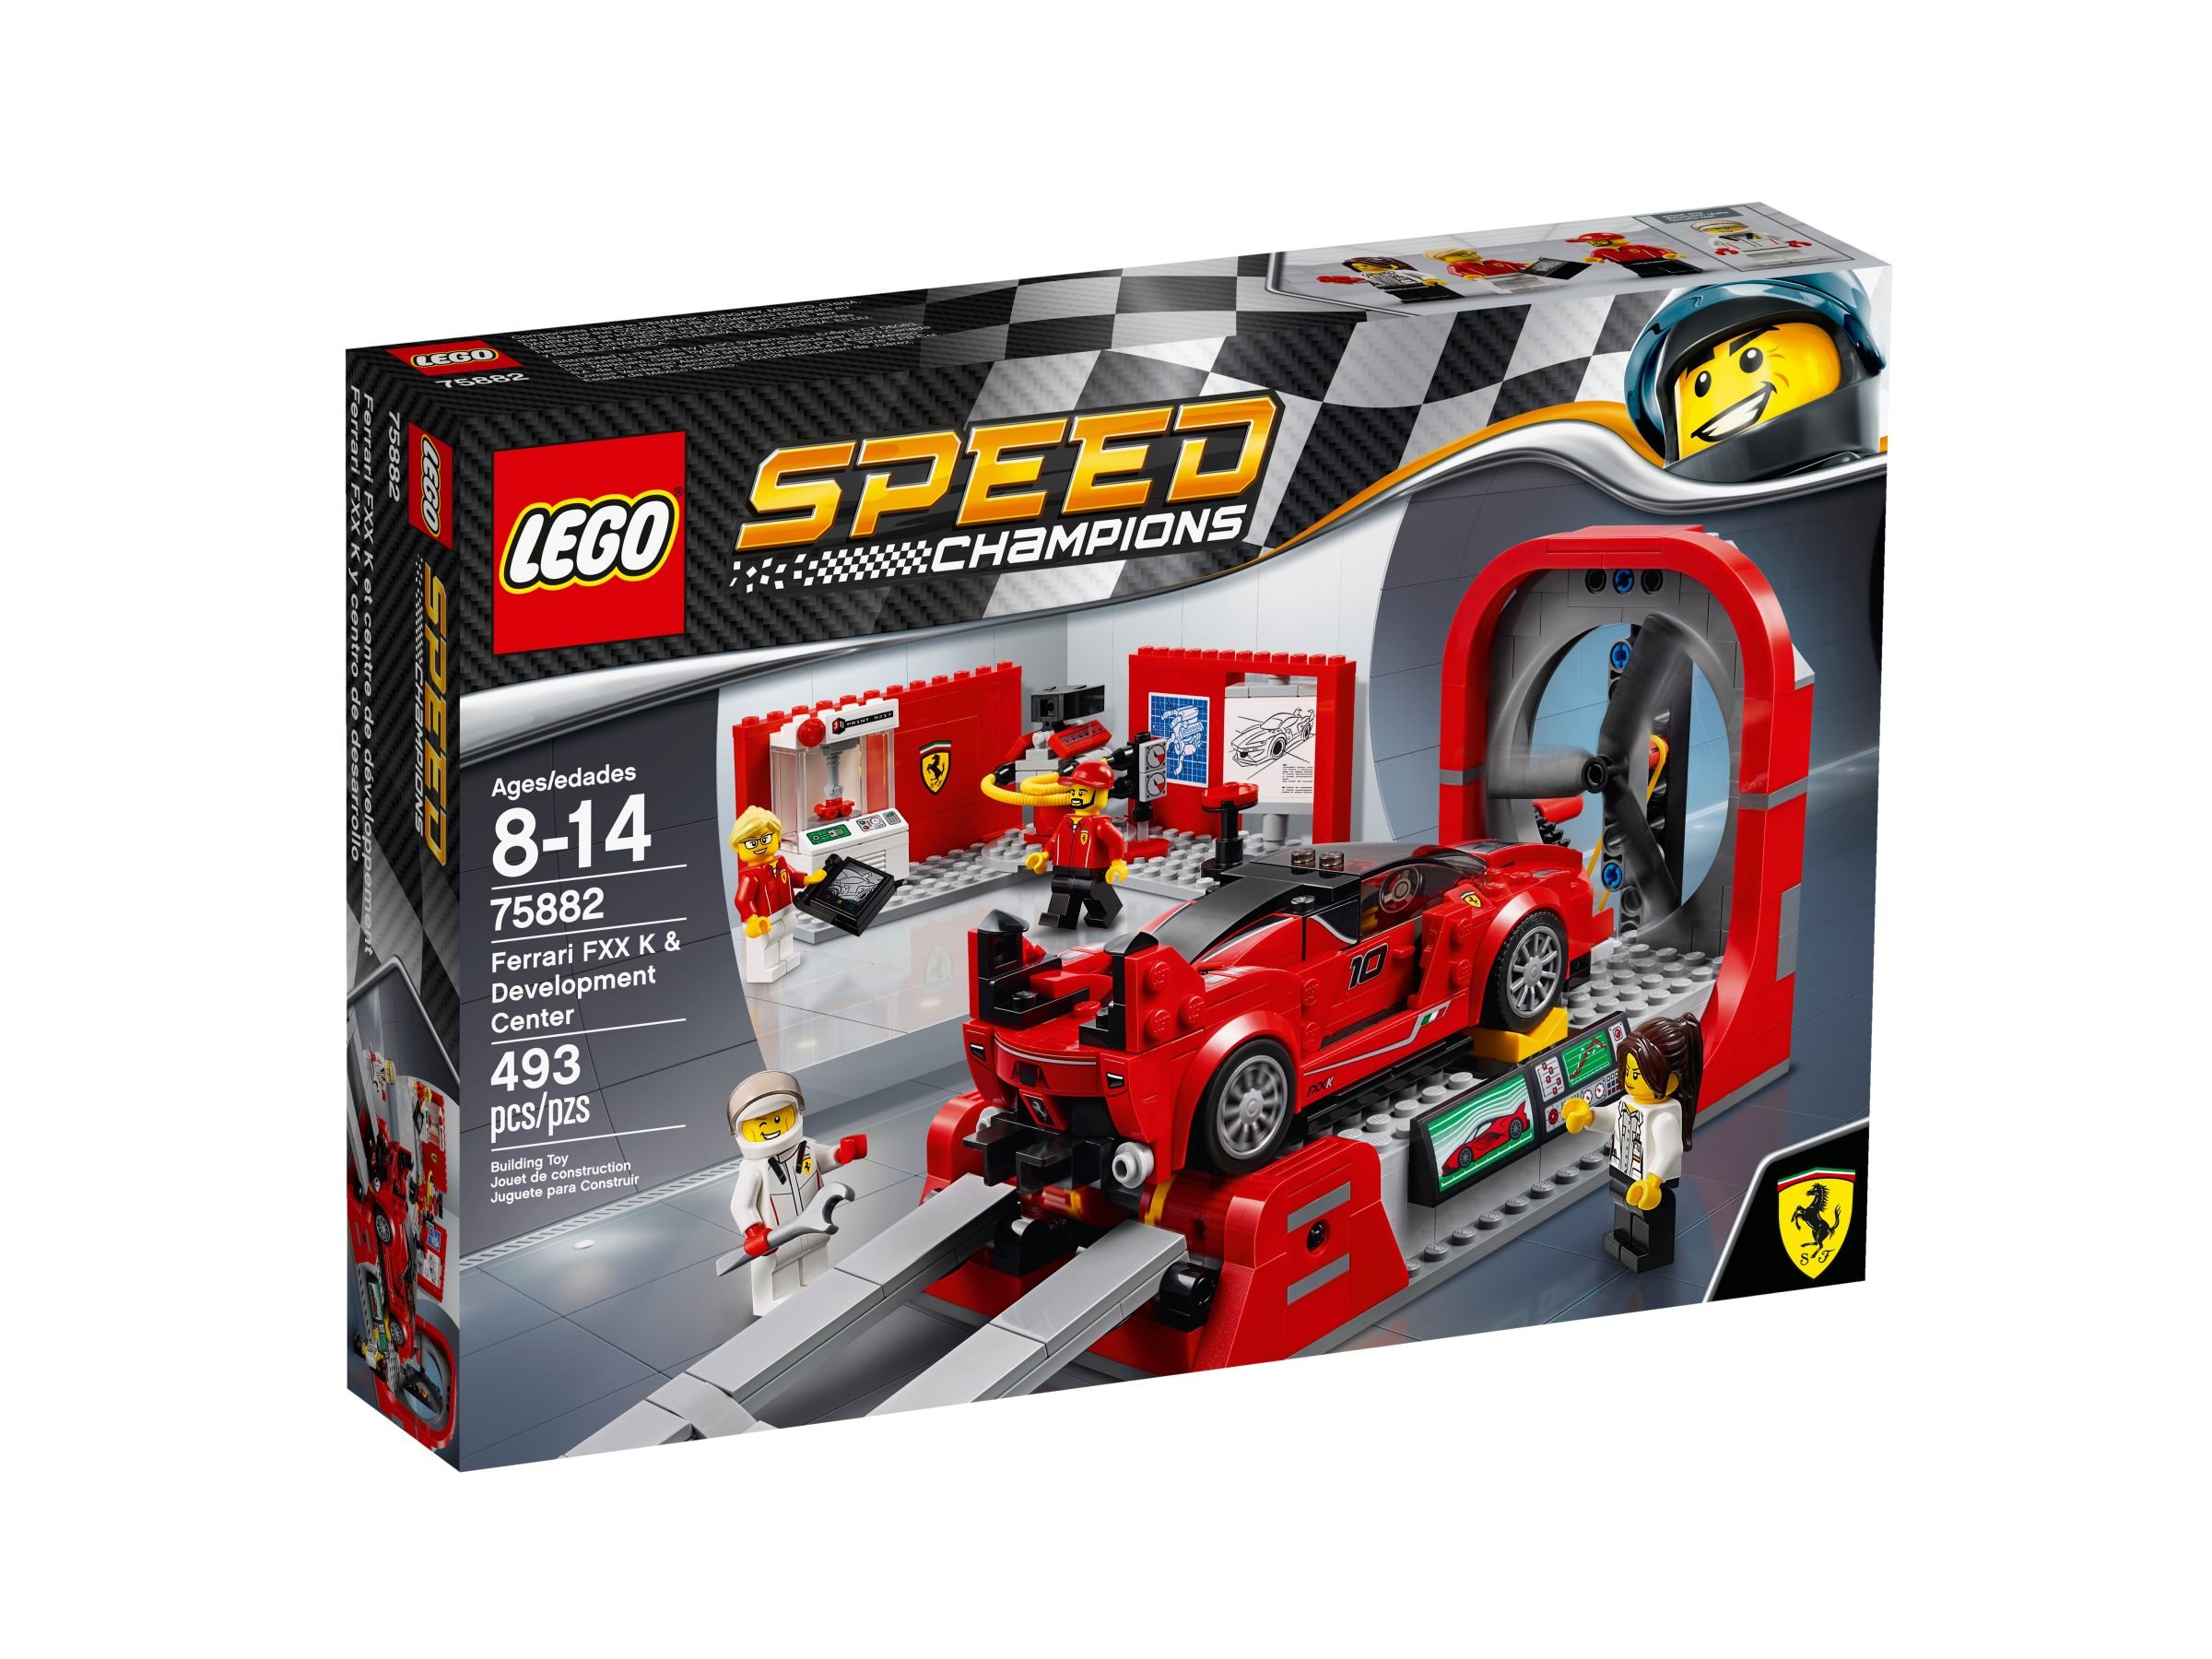 LEGO Speed Champions 75882 Ferrari FXX K & Entwicklungszentrum LEGO_75882_alt1.jpg